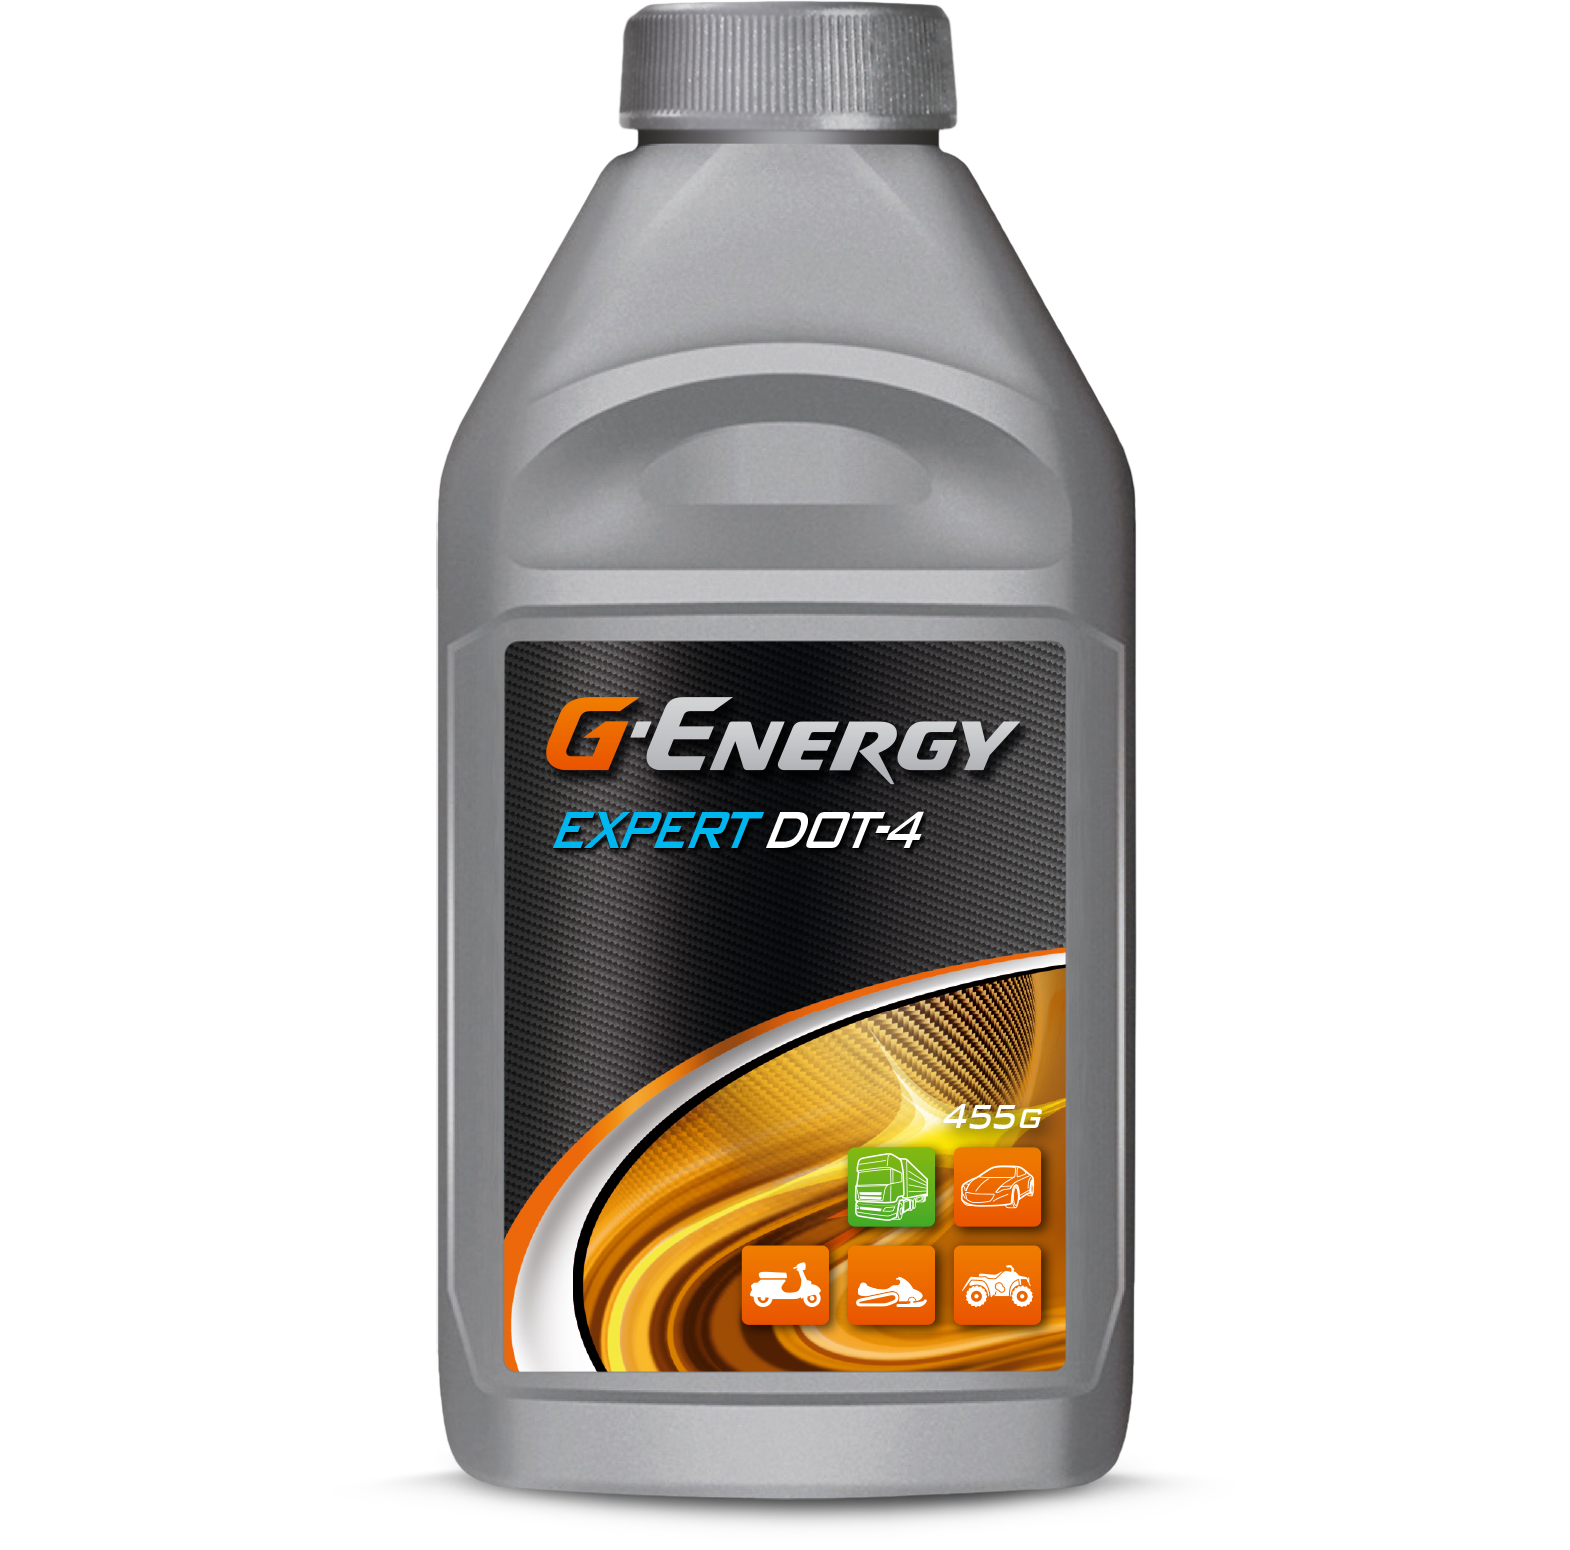 Тормозная жидкость "G-Energy" Expert Dot4, 0.910 кг